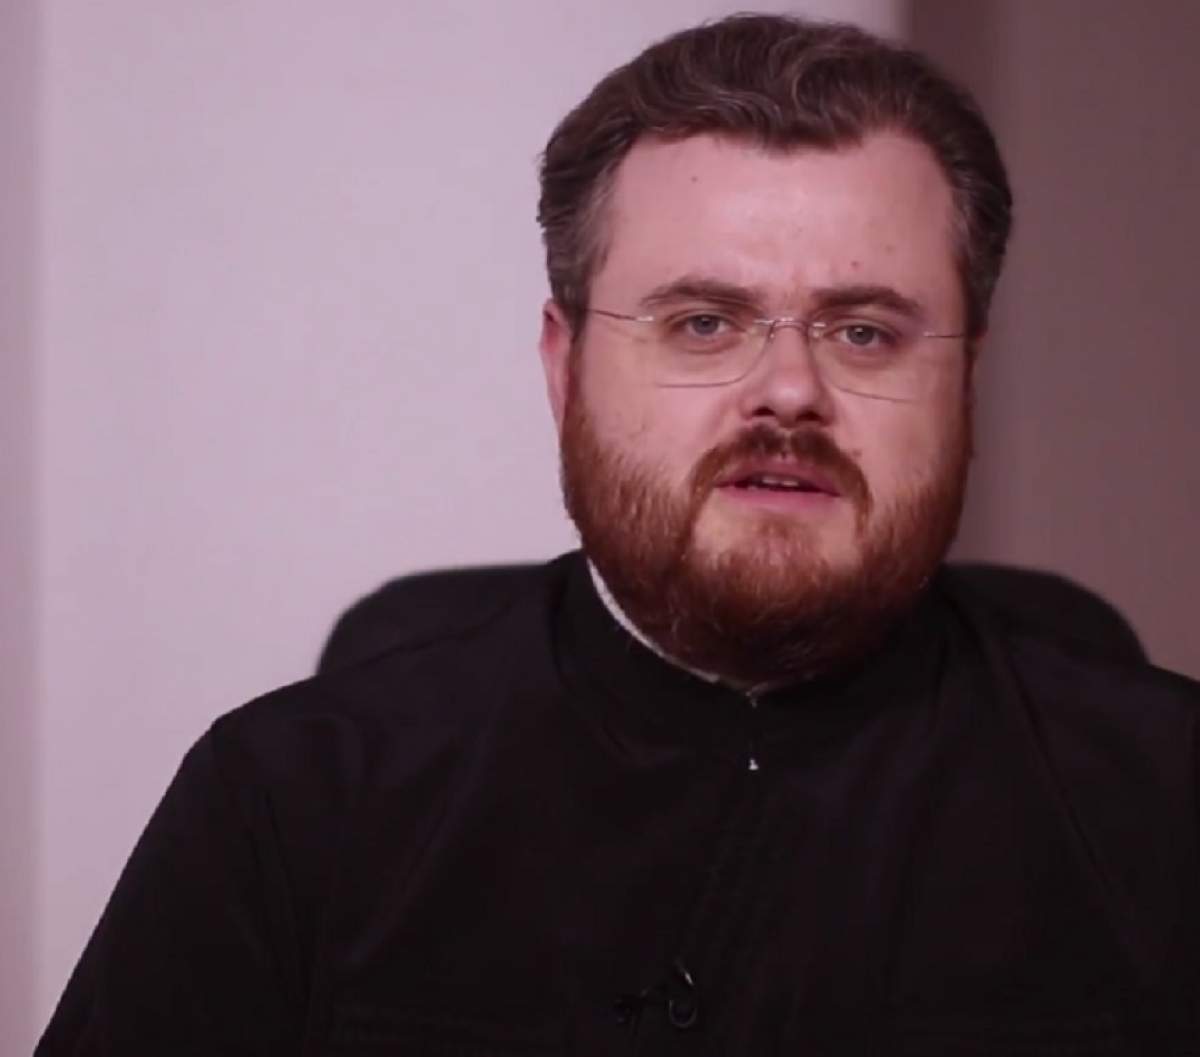 Părintele Ionuț Mavrichi explică dacă este sau nu bine să speli și să faci curat, în zi de sărbătoare